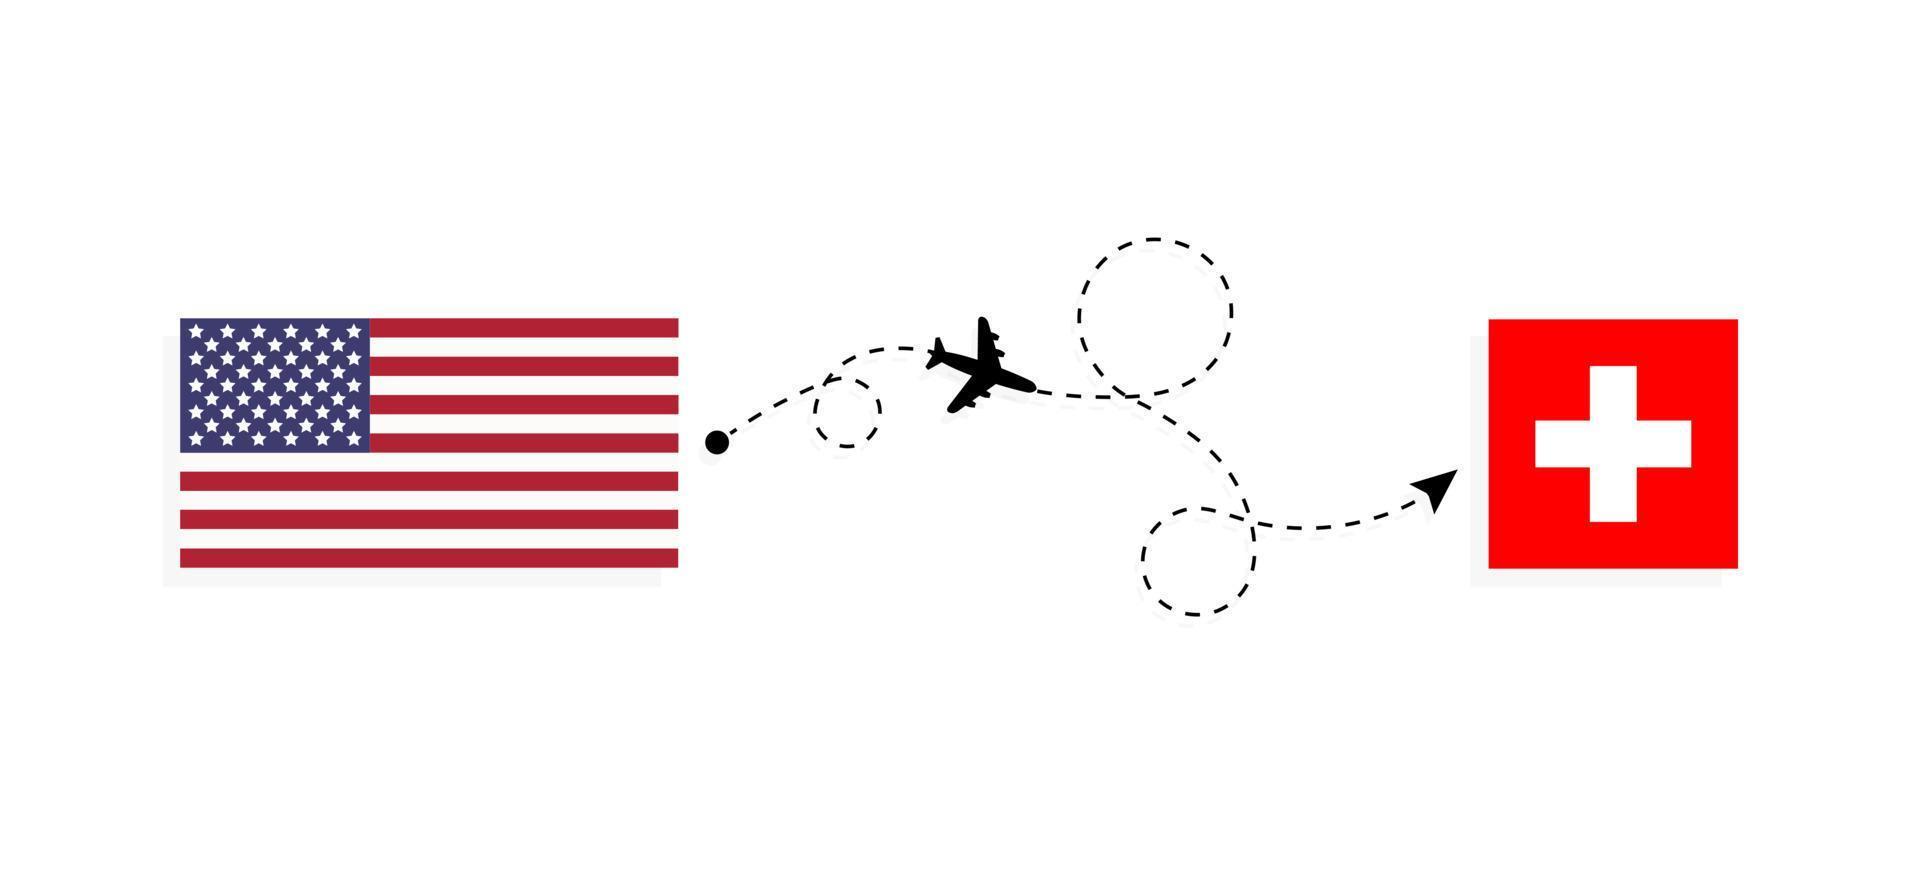 vol et voyage des états-unis vers la suisse par concept de voyage en avion de passagers vecteur